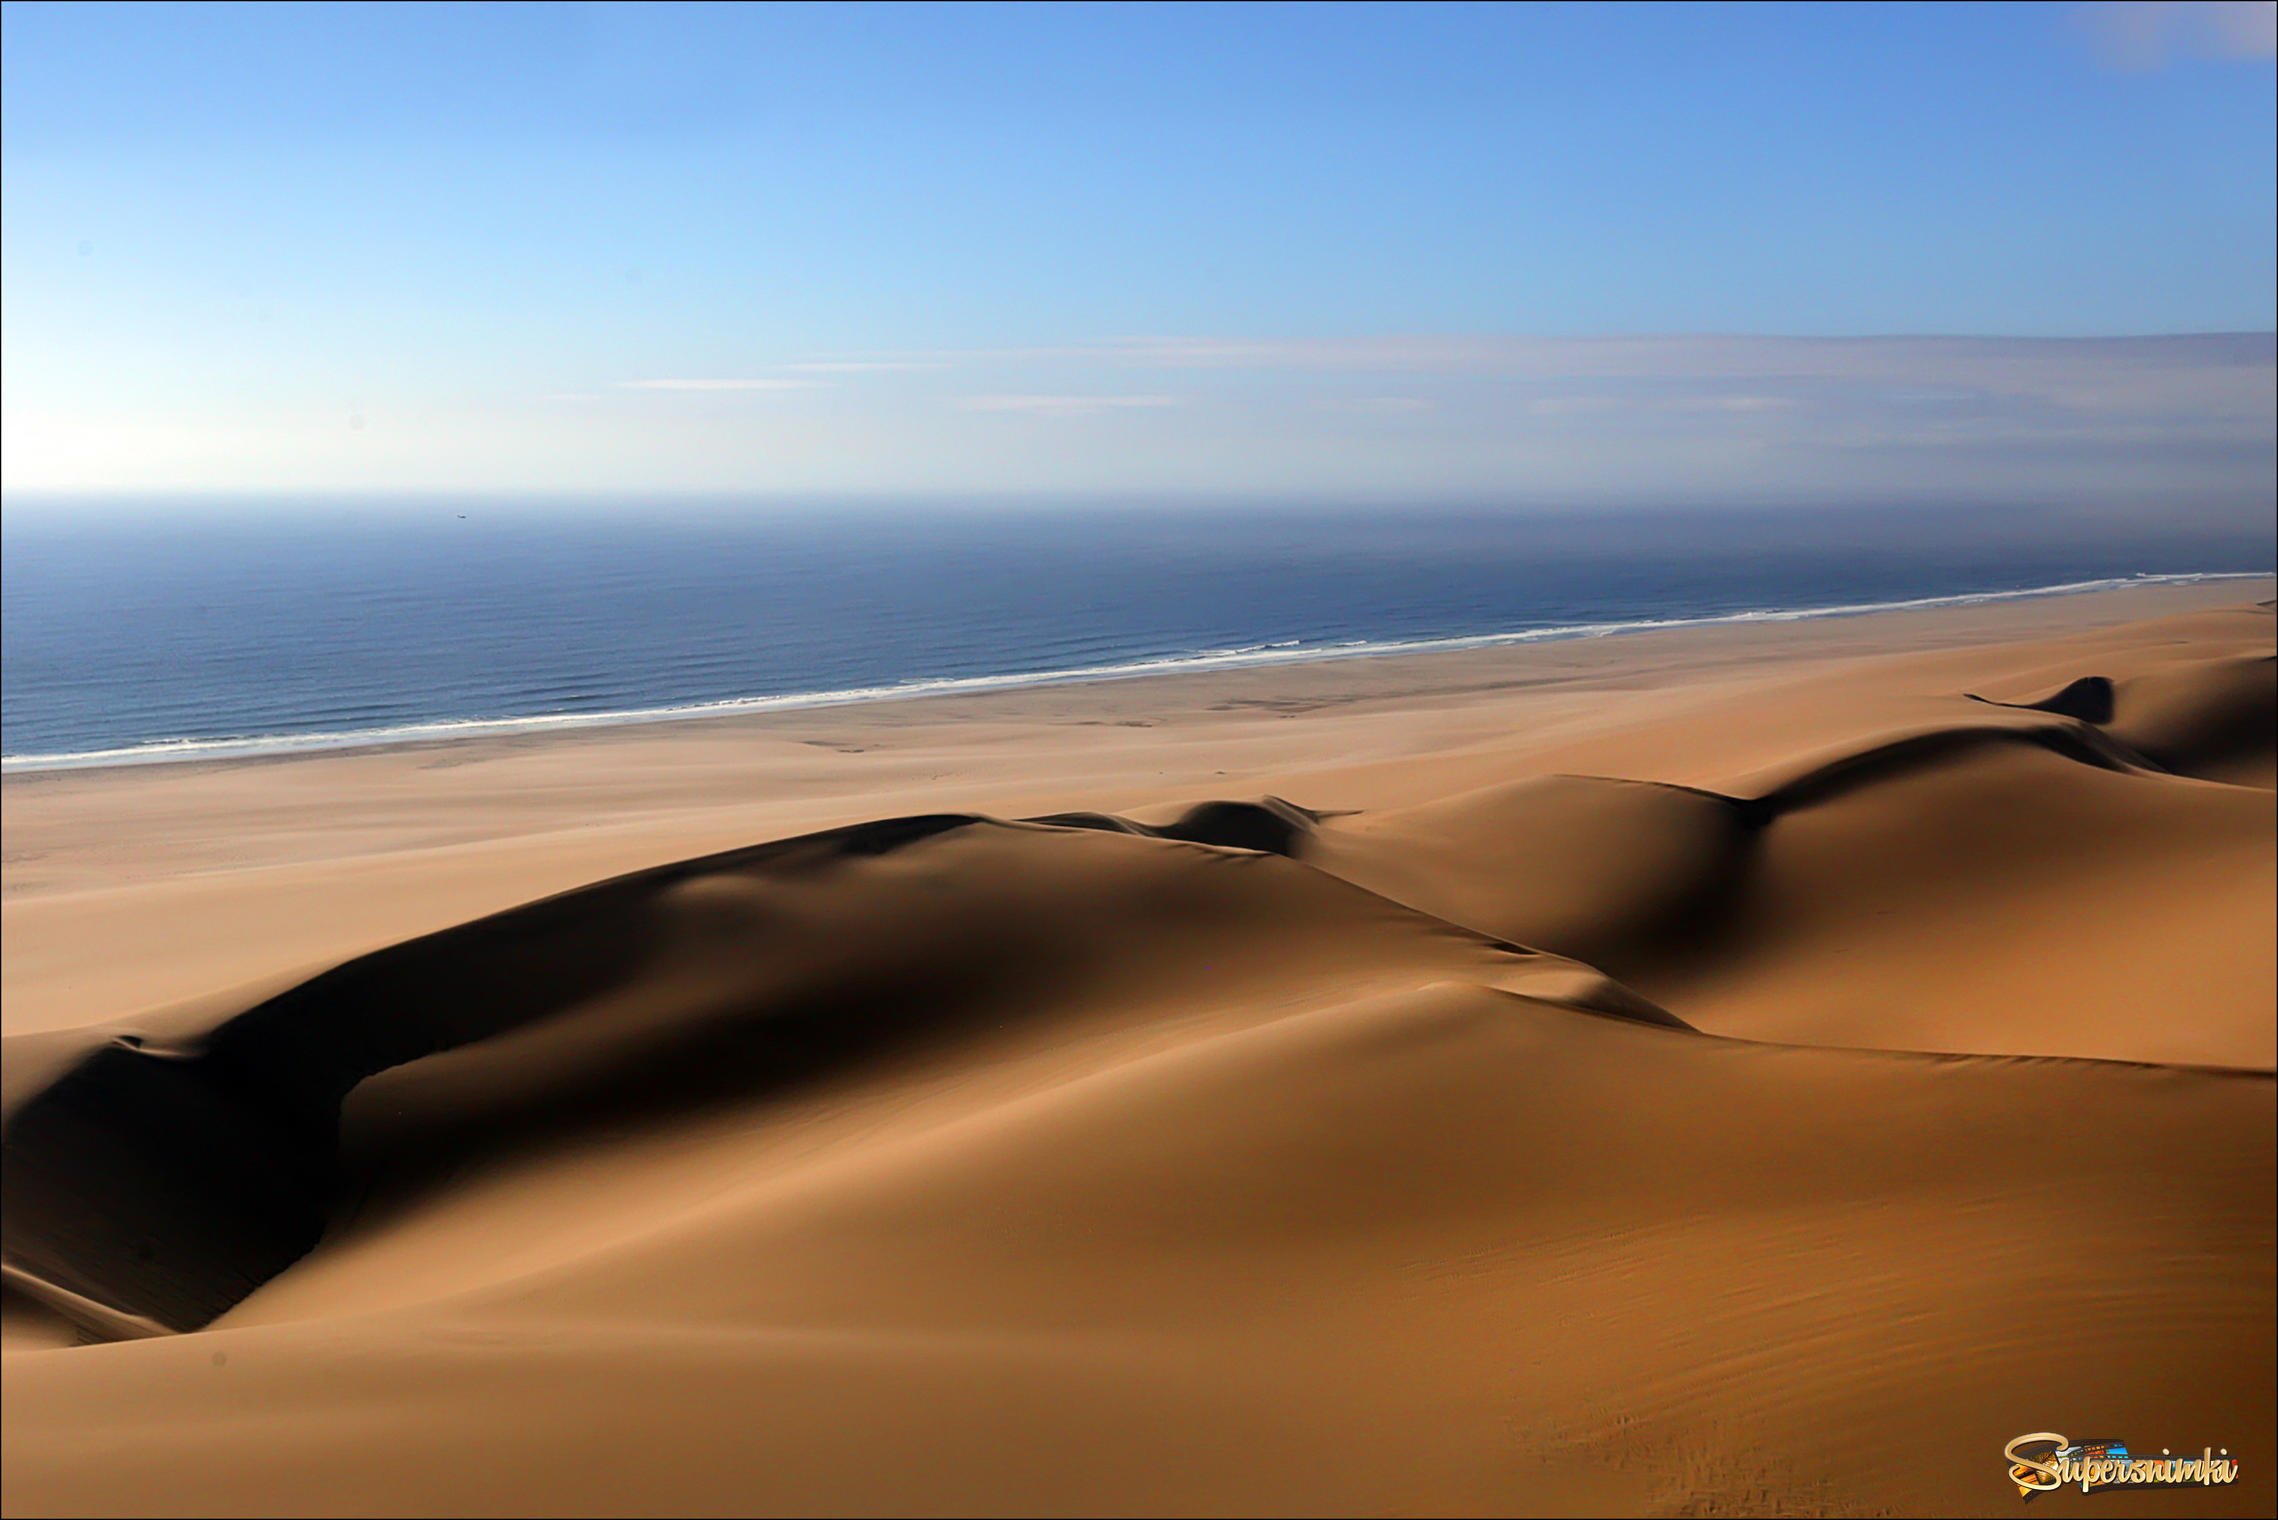 Пустыня Намиб простирается до самого океана